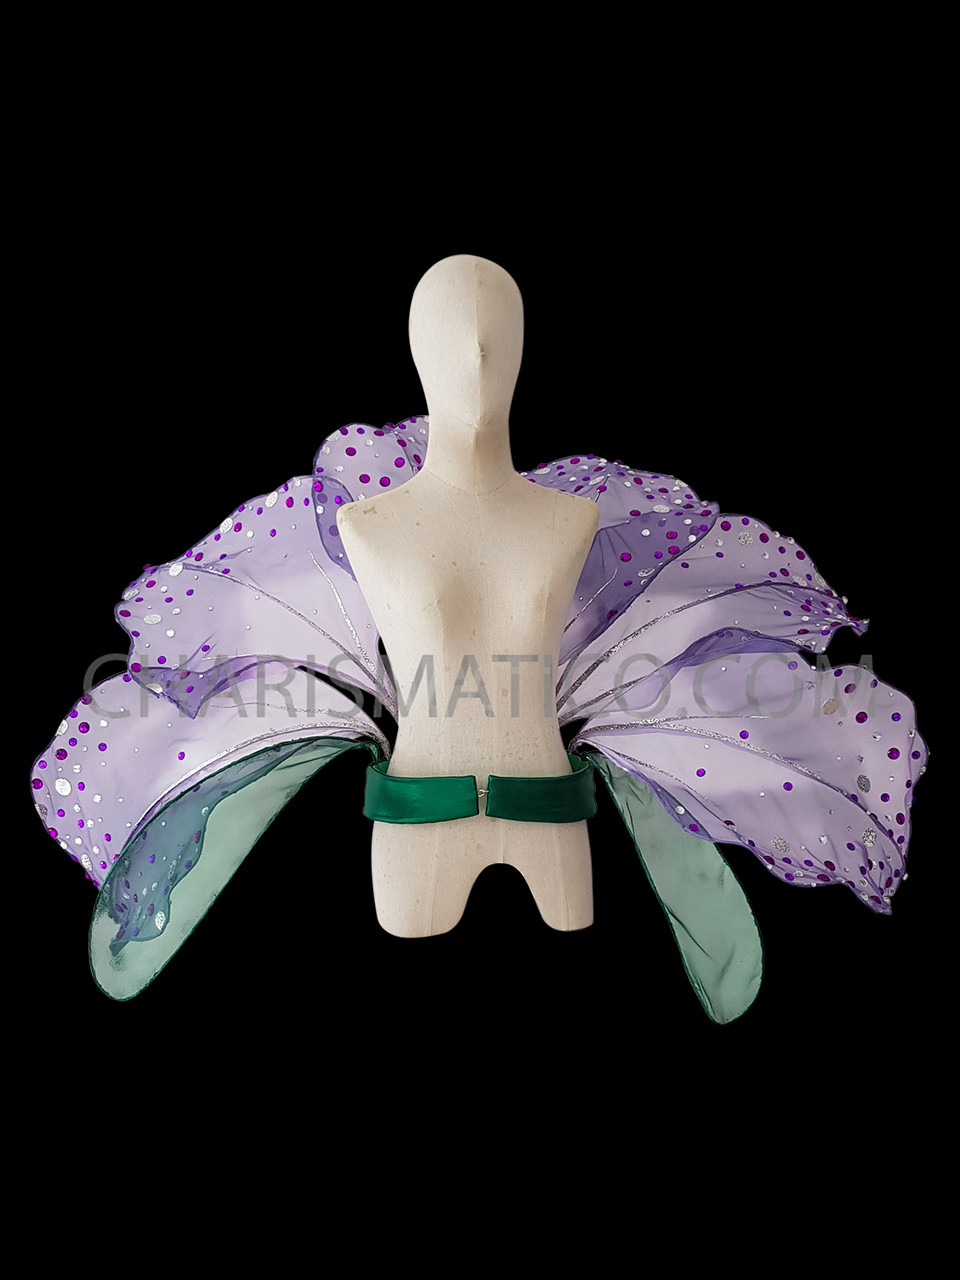 Buy Victoria's Secret Tie Dye Icy Lavender Purple Lace Waist